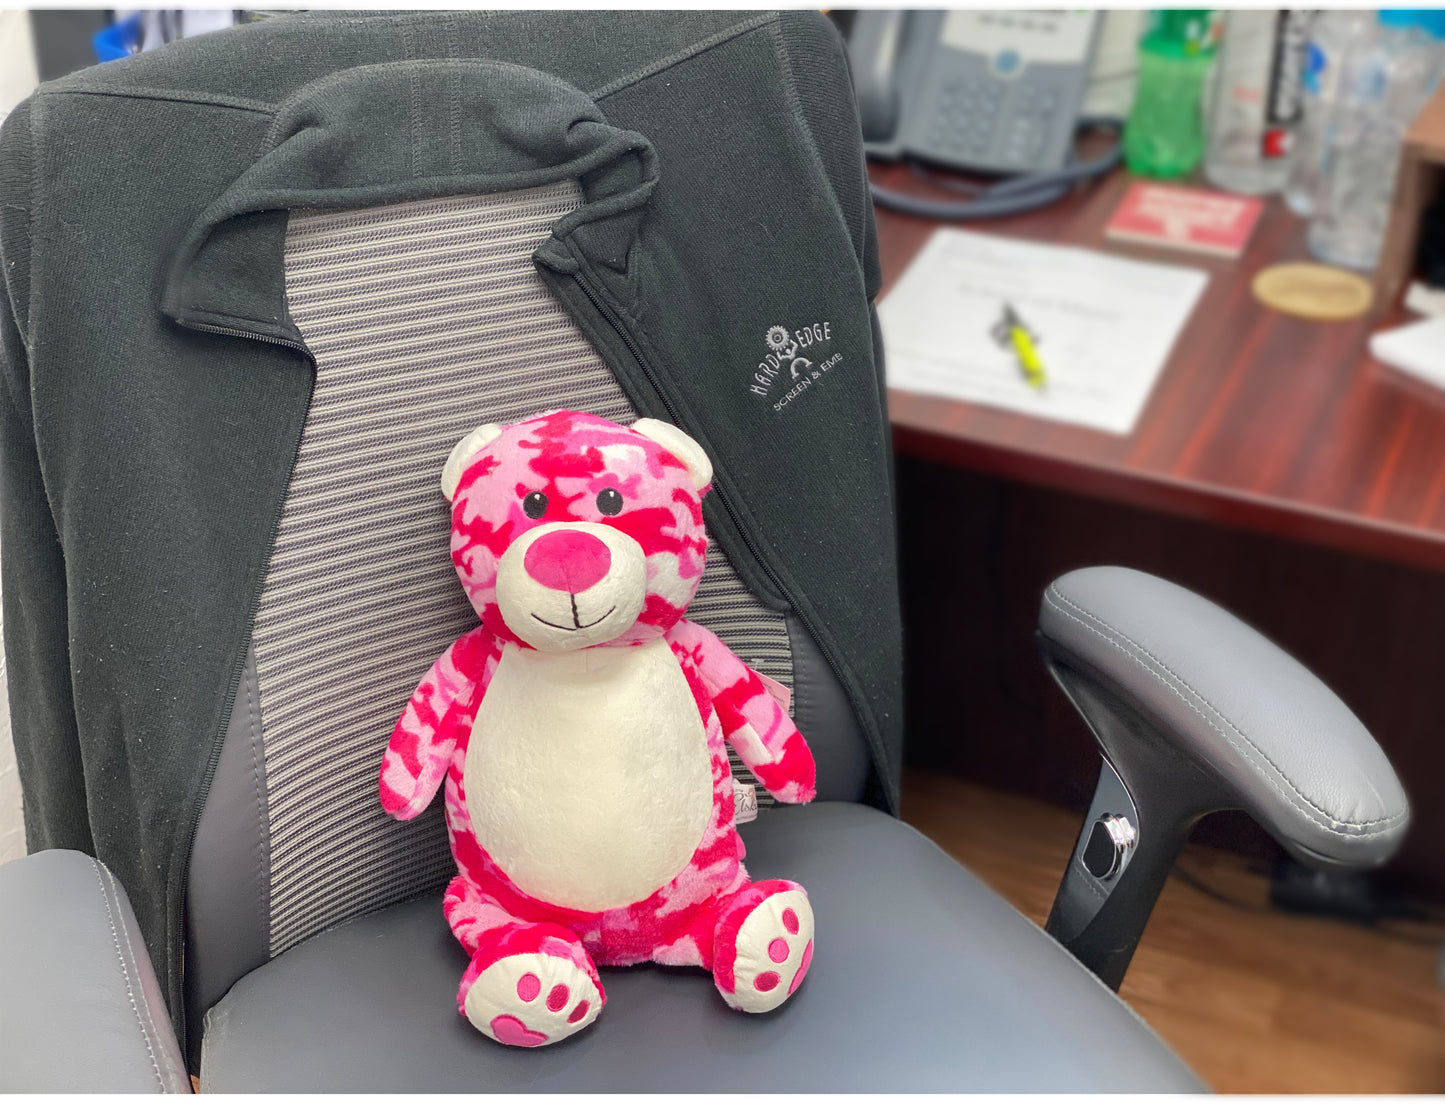 Personalized Stuffed Pink Camo Bear